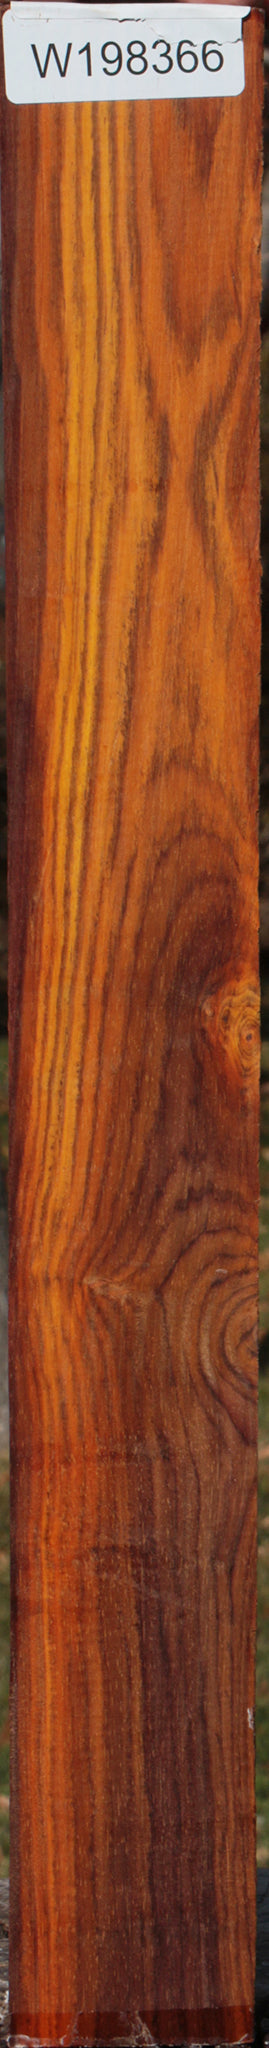 Cocobolo Lumber